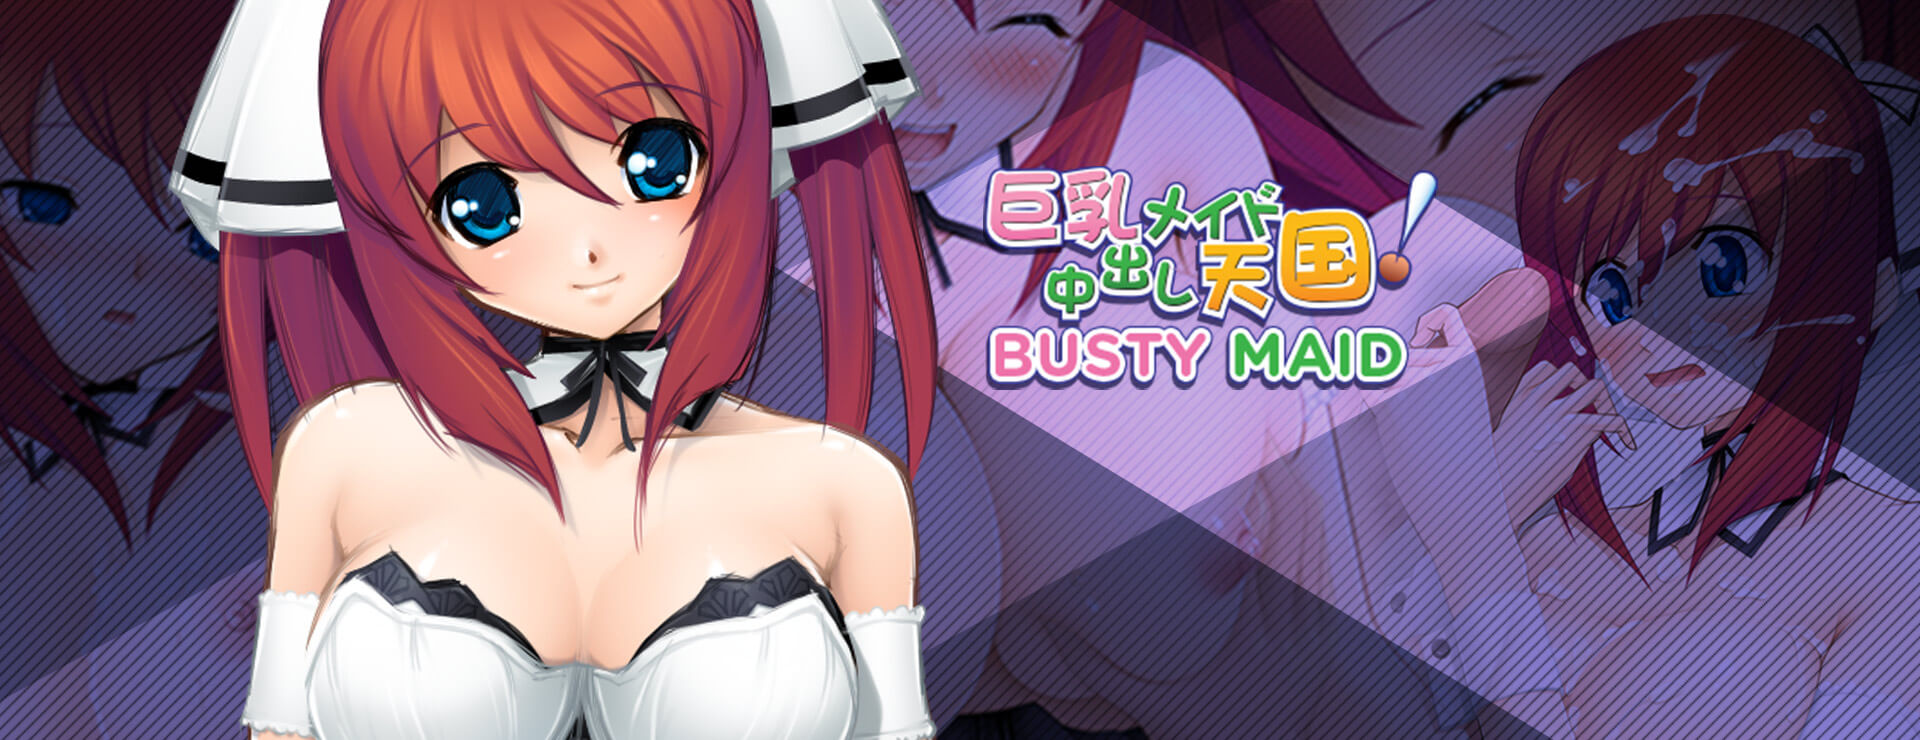 Busty Maid - Novela Visual Juego